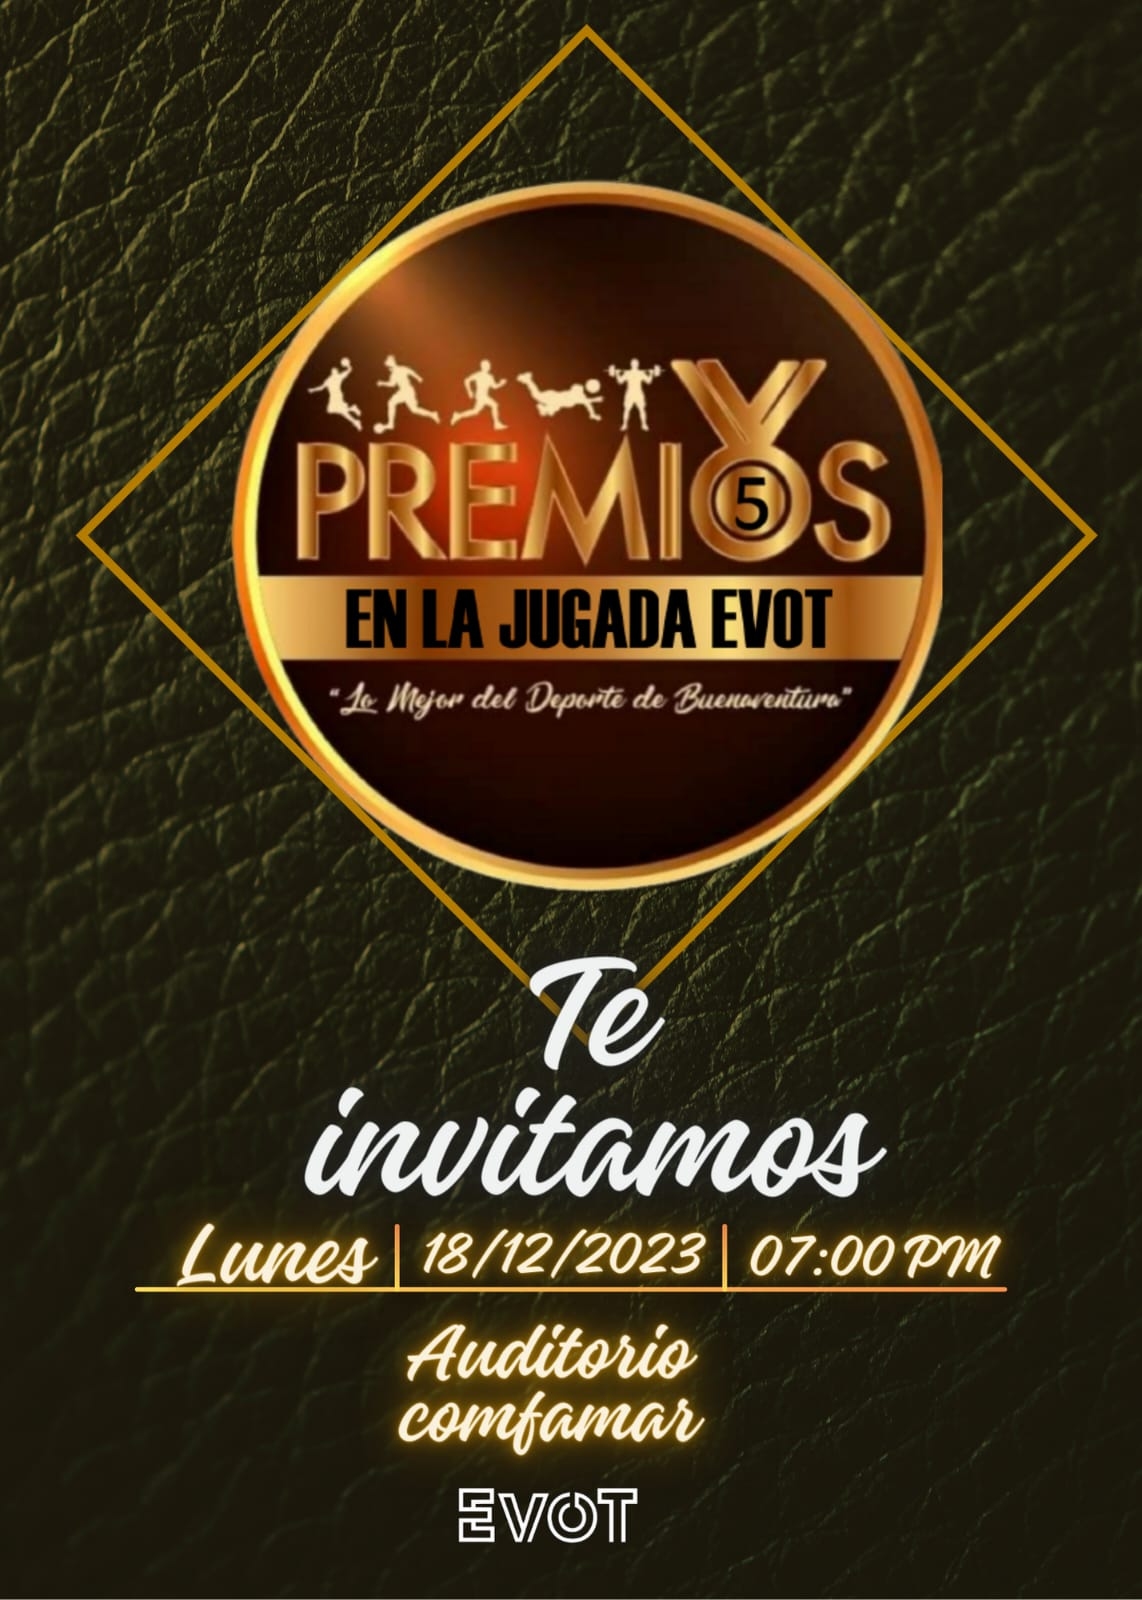 Deportistas de Buenaventura serán galardonados en IV versión de los Premios JJ en la Jugada